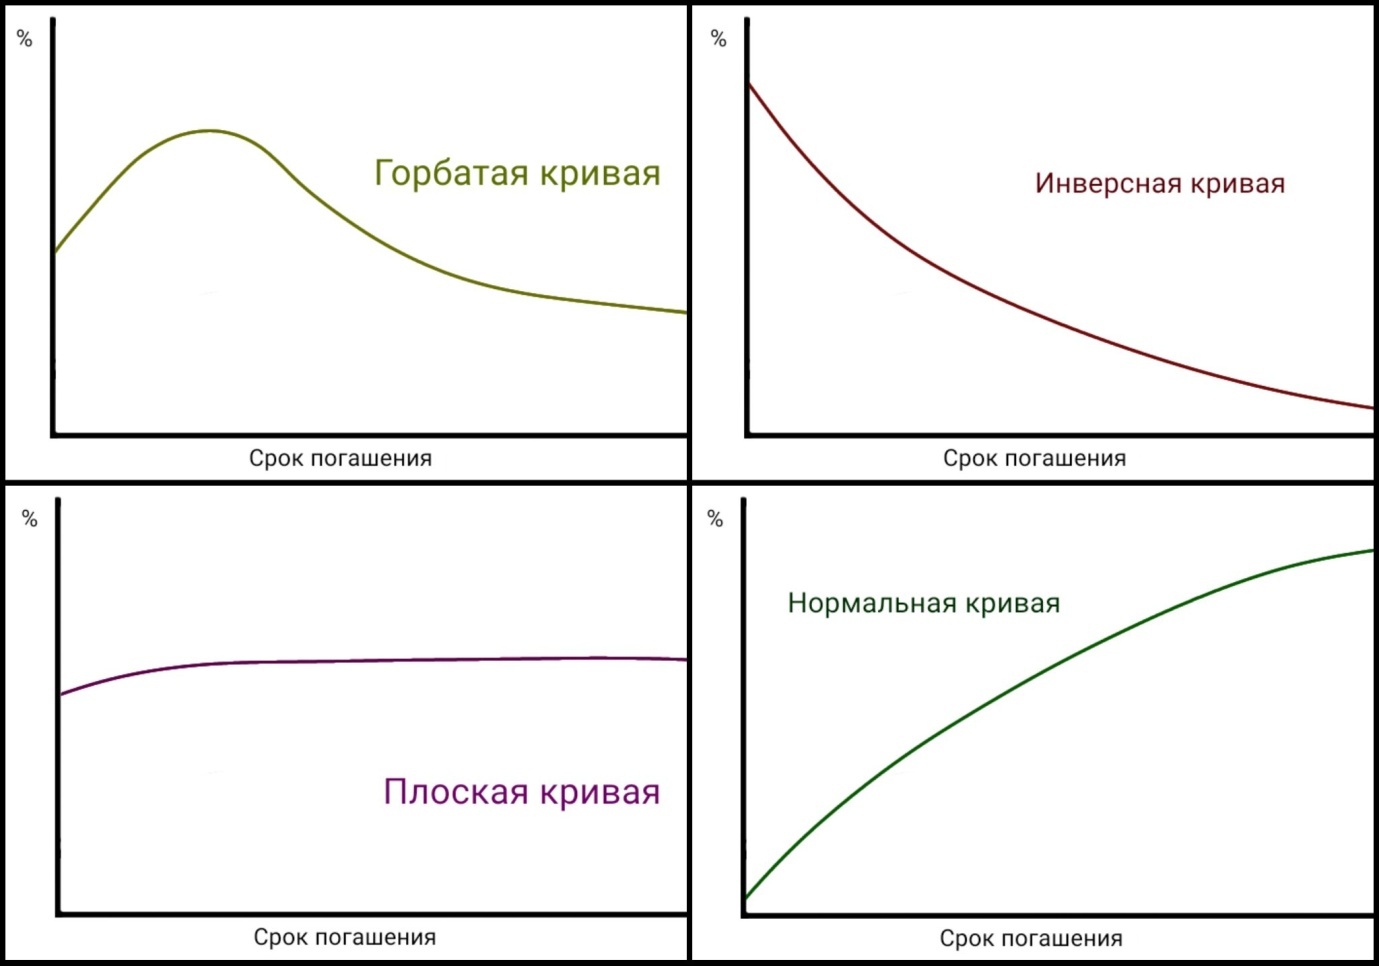 Типы кривой, каждая из которых соответствует определённой экономической ситуации